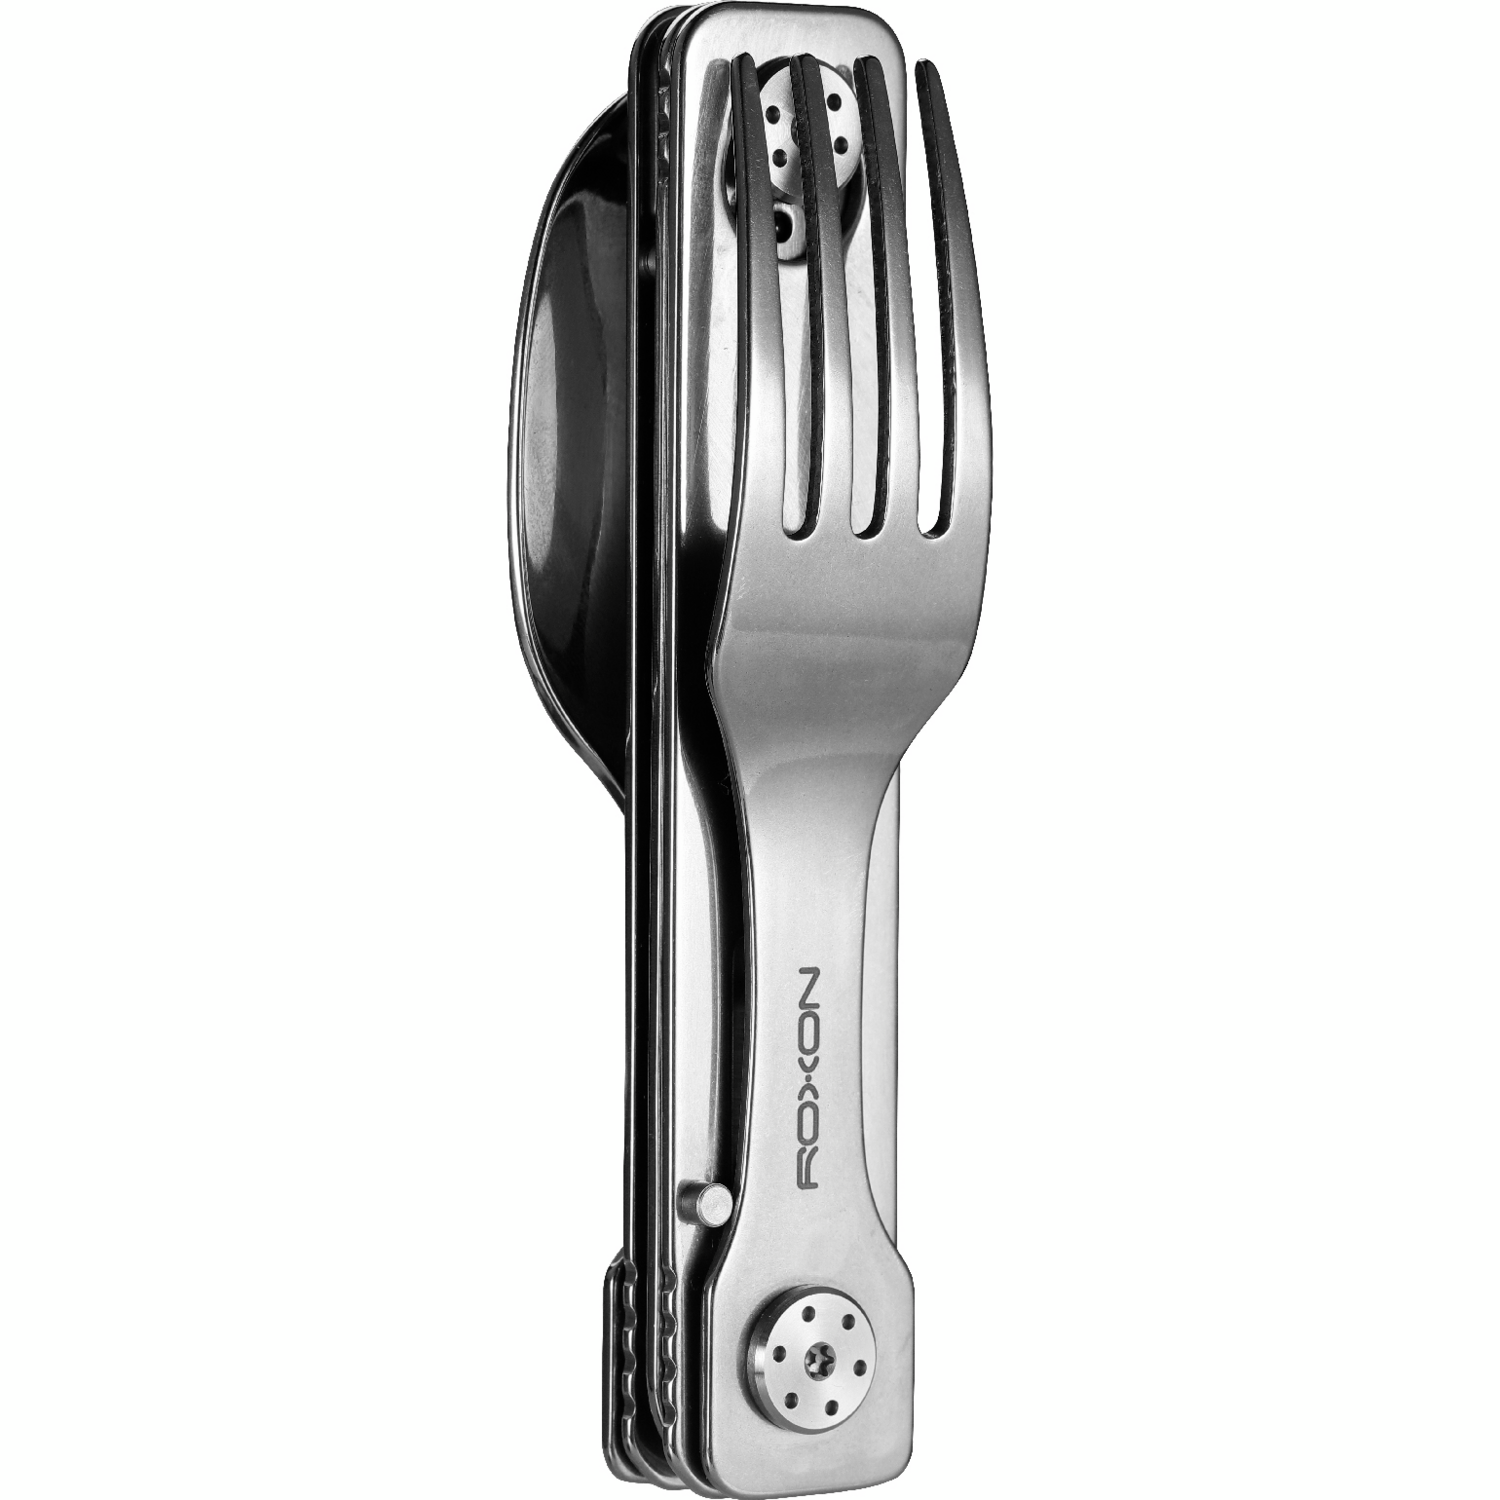 Набор столовых приборов Roxon C1 3 in1 (ложка, вилка, нож) серый фото 